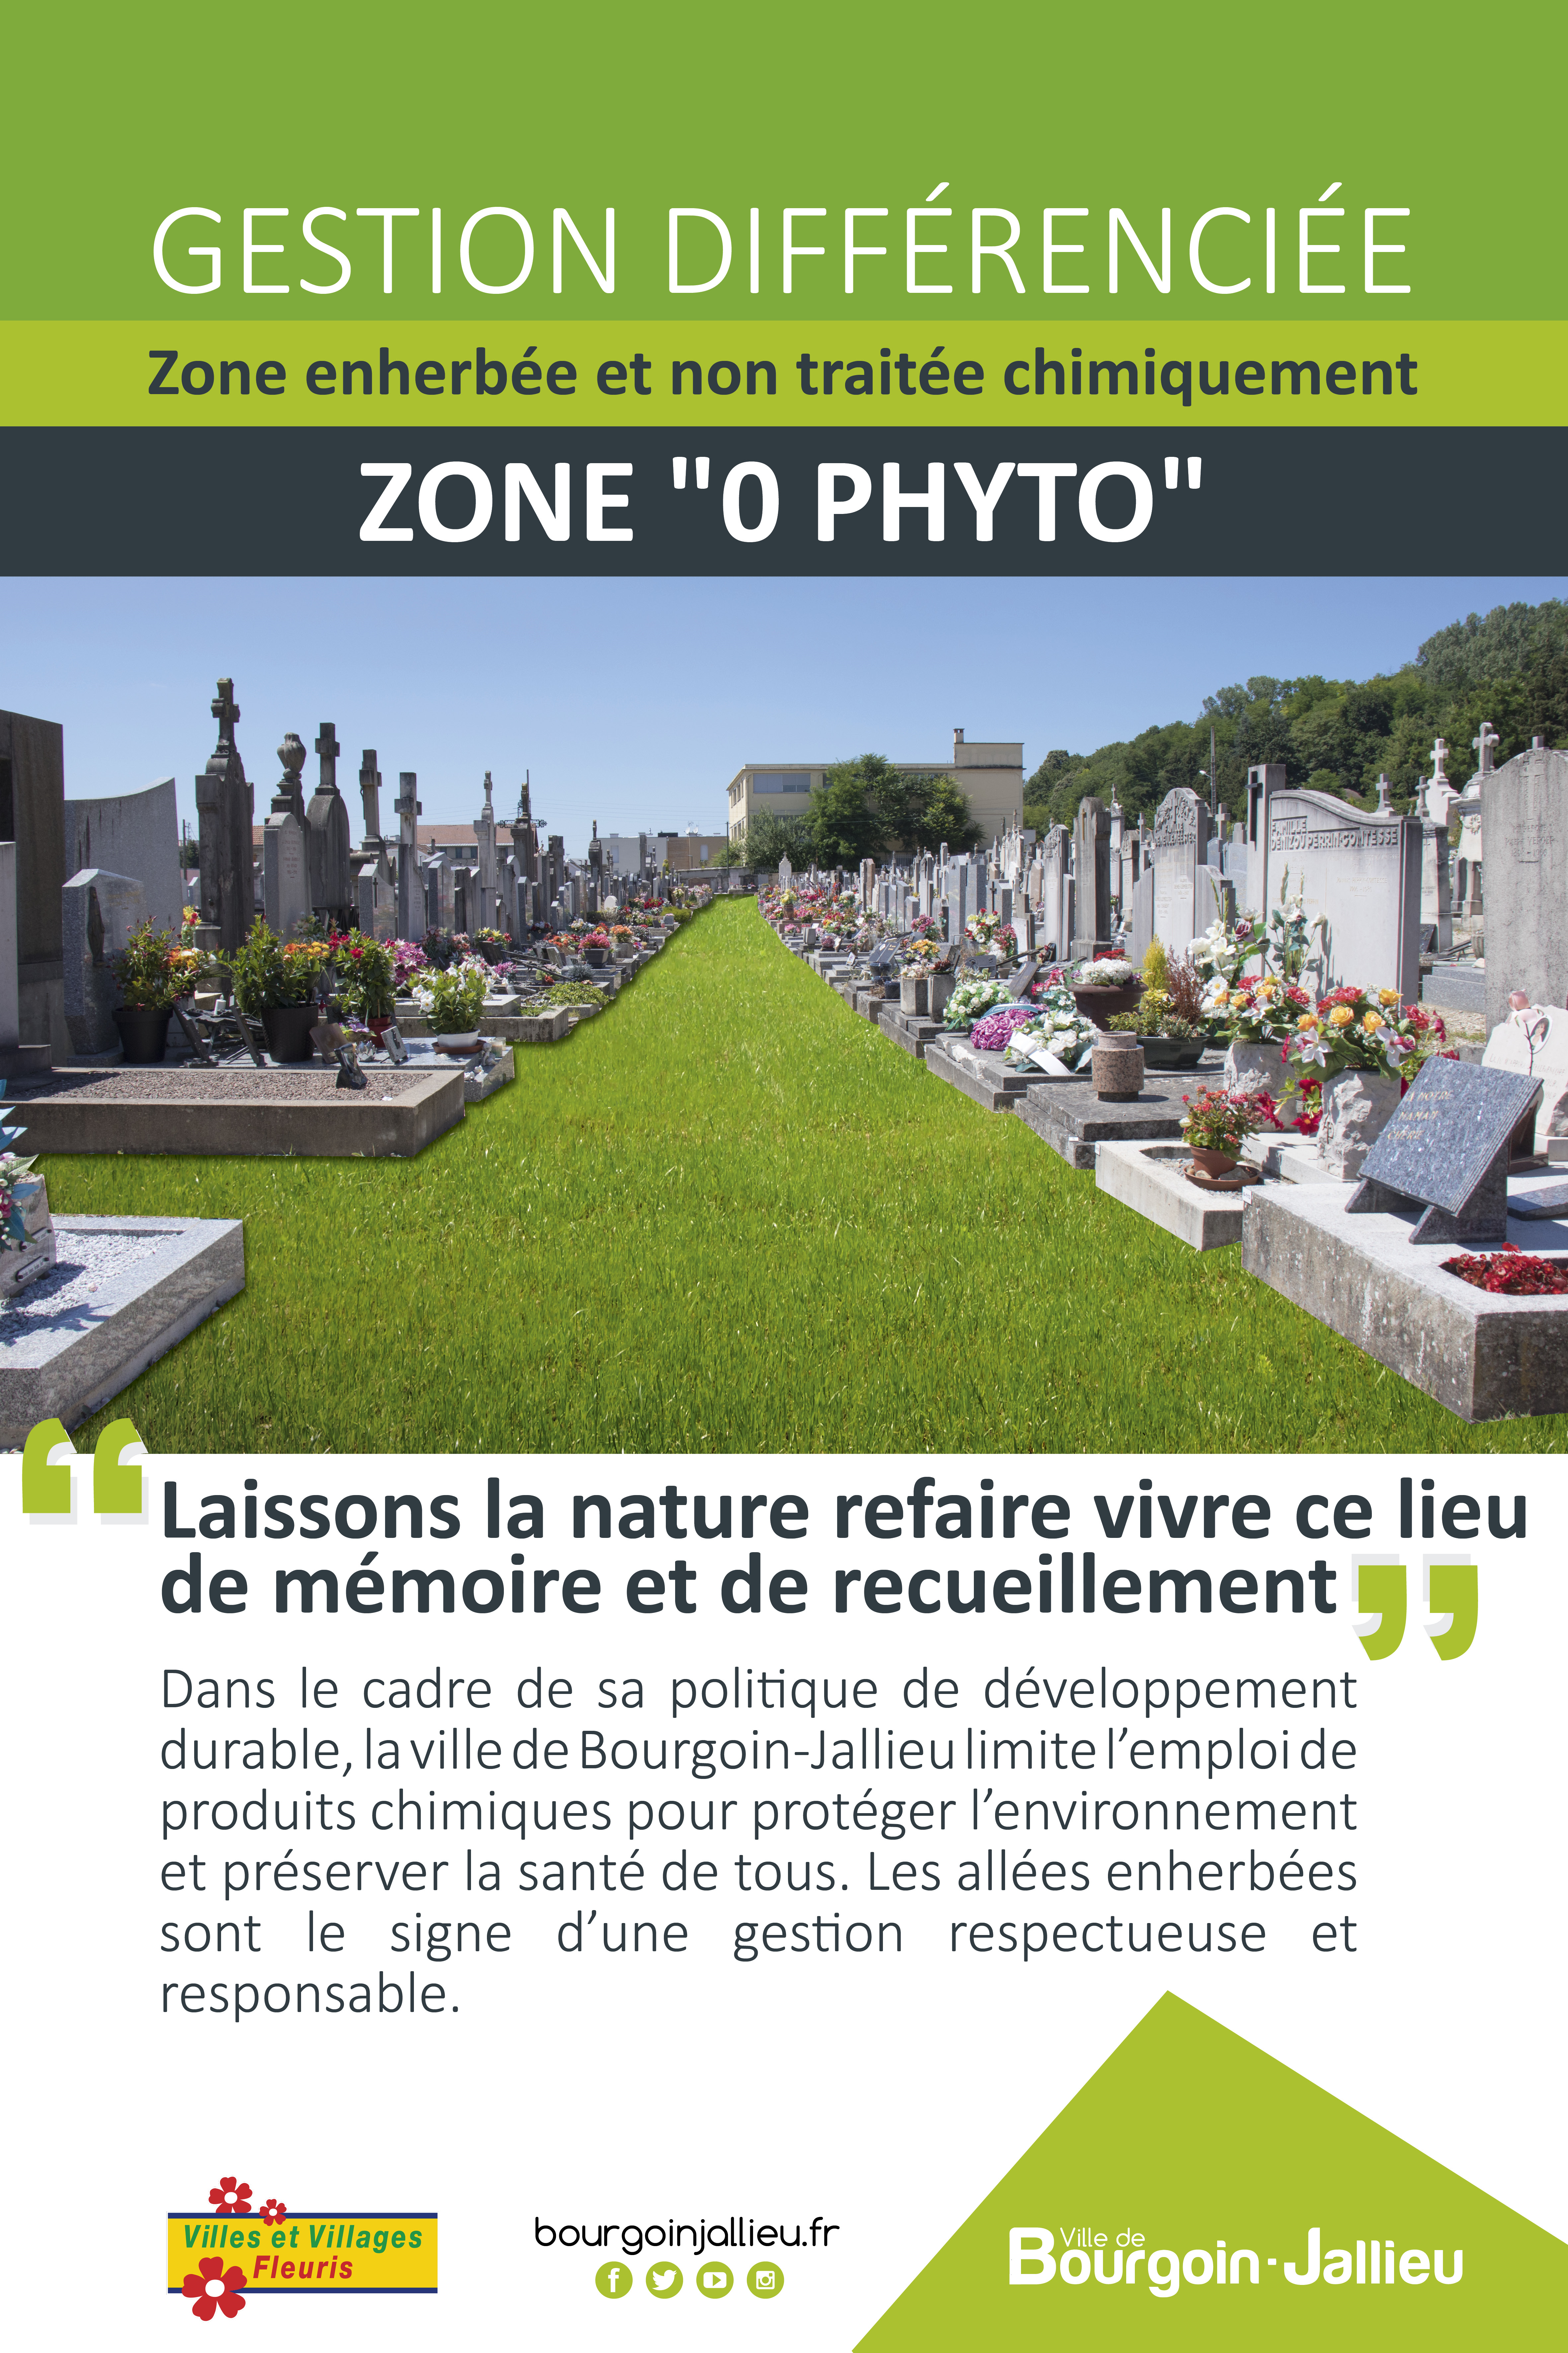 Le zéro phyto dans les cimetières